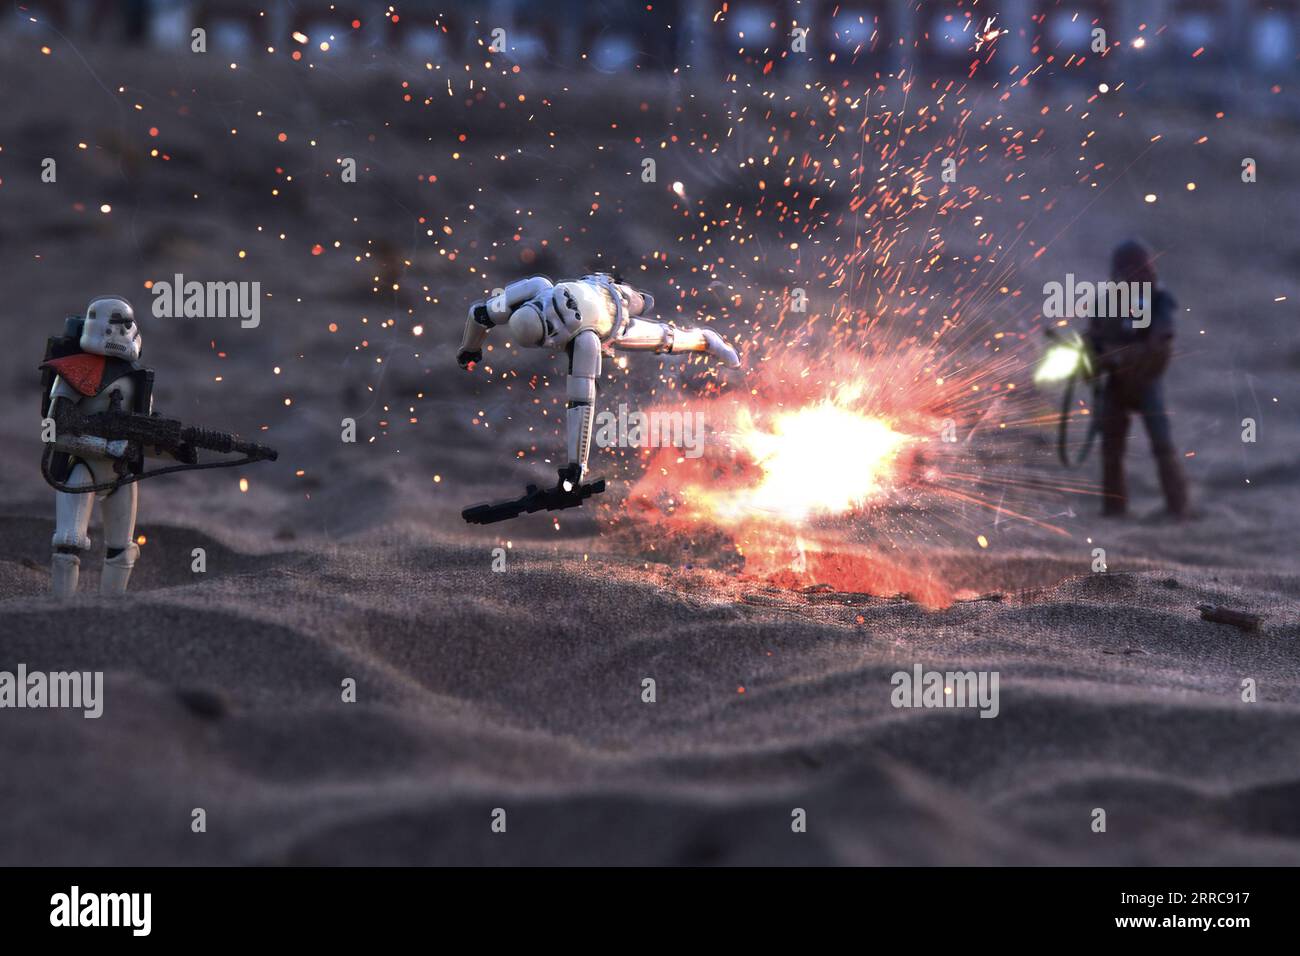 batalla en la arena, Mar del Plata, Argentina Stock Photo